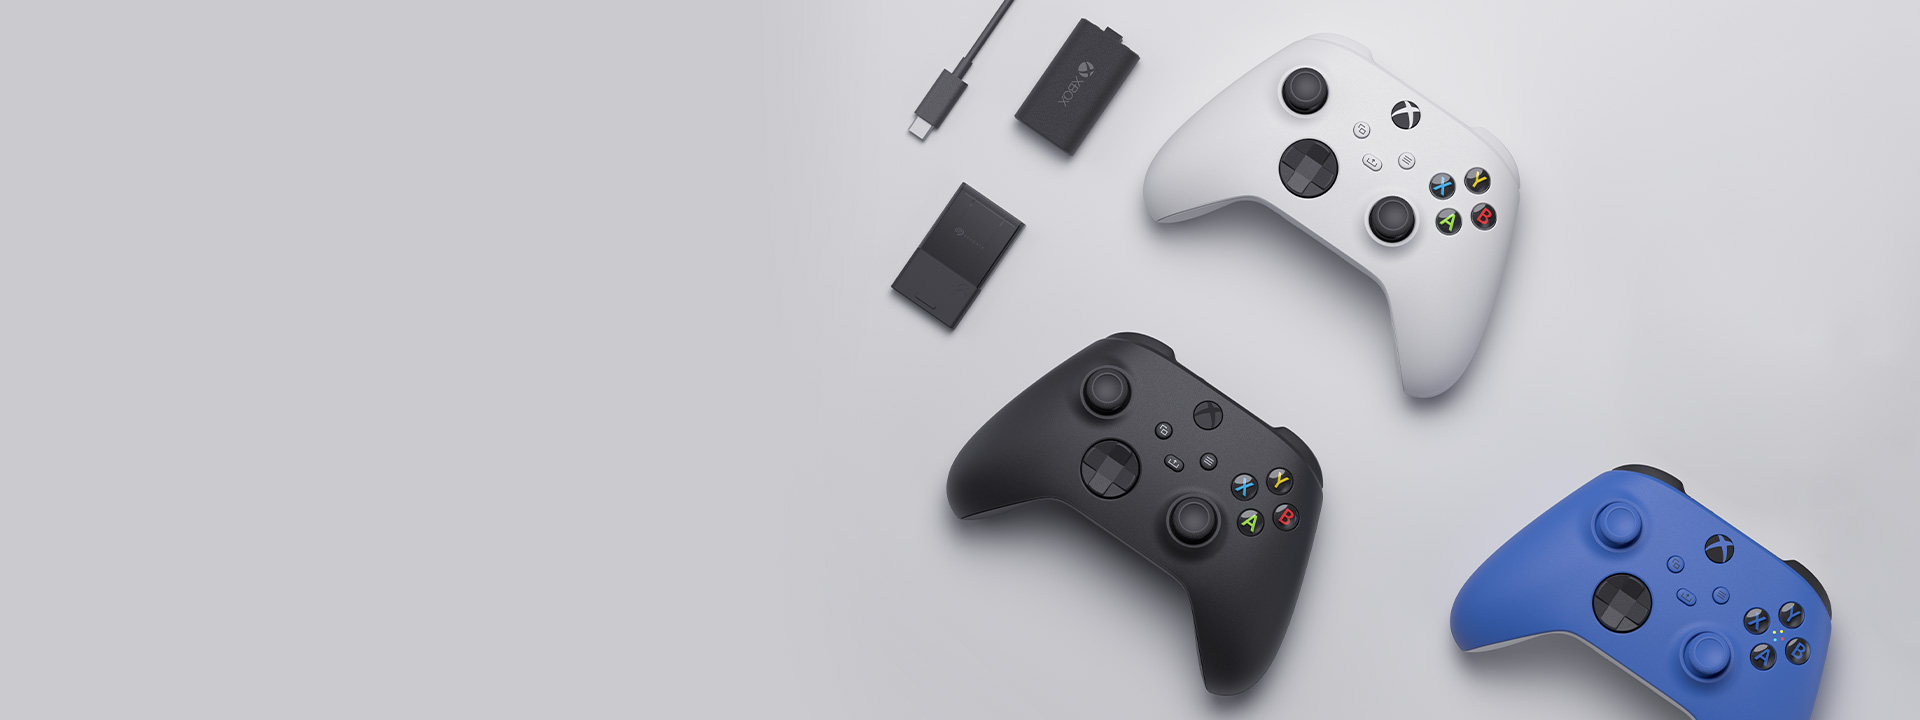 Vários acessórios do Xbox, incluindo o Controle Sem Fio do Xbox, o kit Jogar e Carregar e a Placa de Expansão de Armazenamento Seagate para Xbox Series X|S dispostos lado a lado.